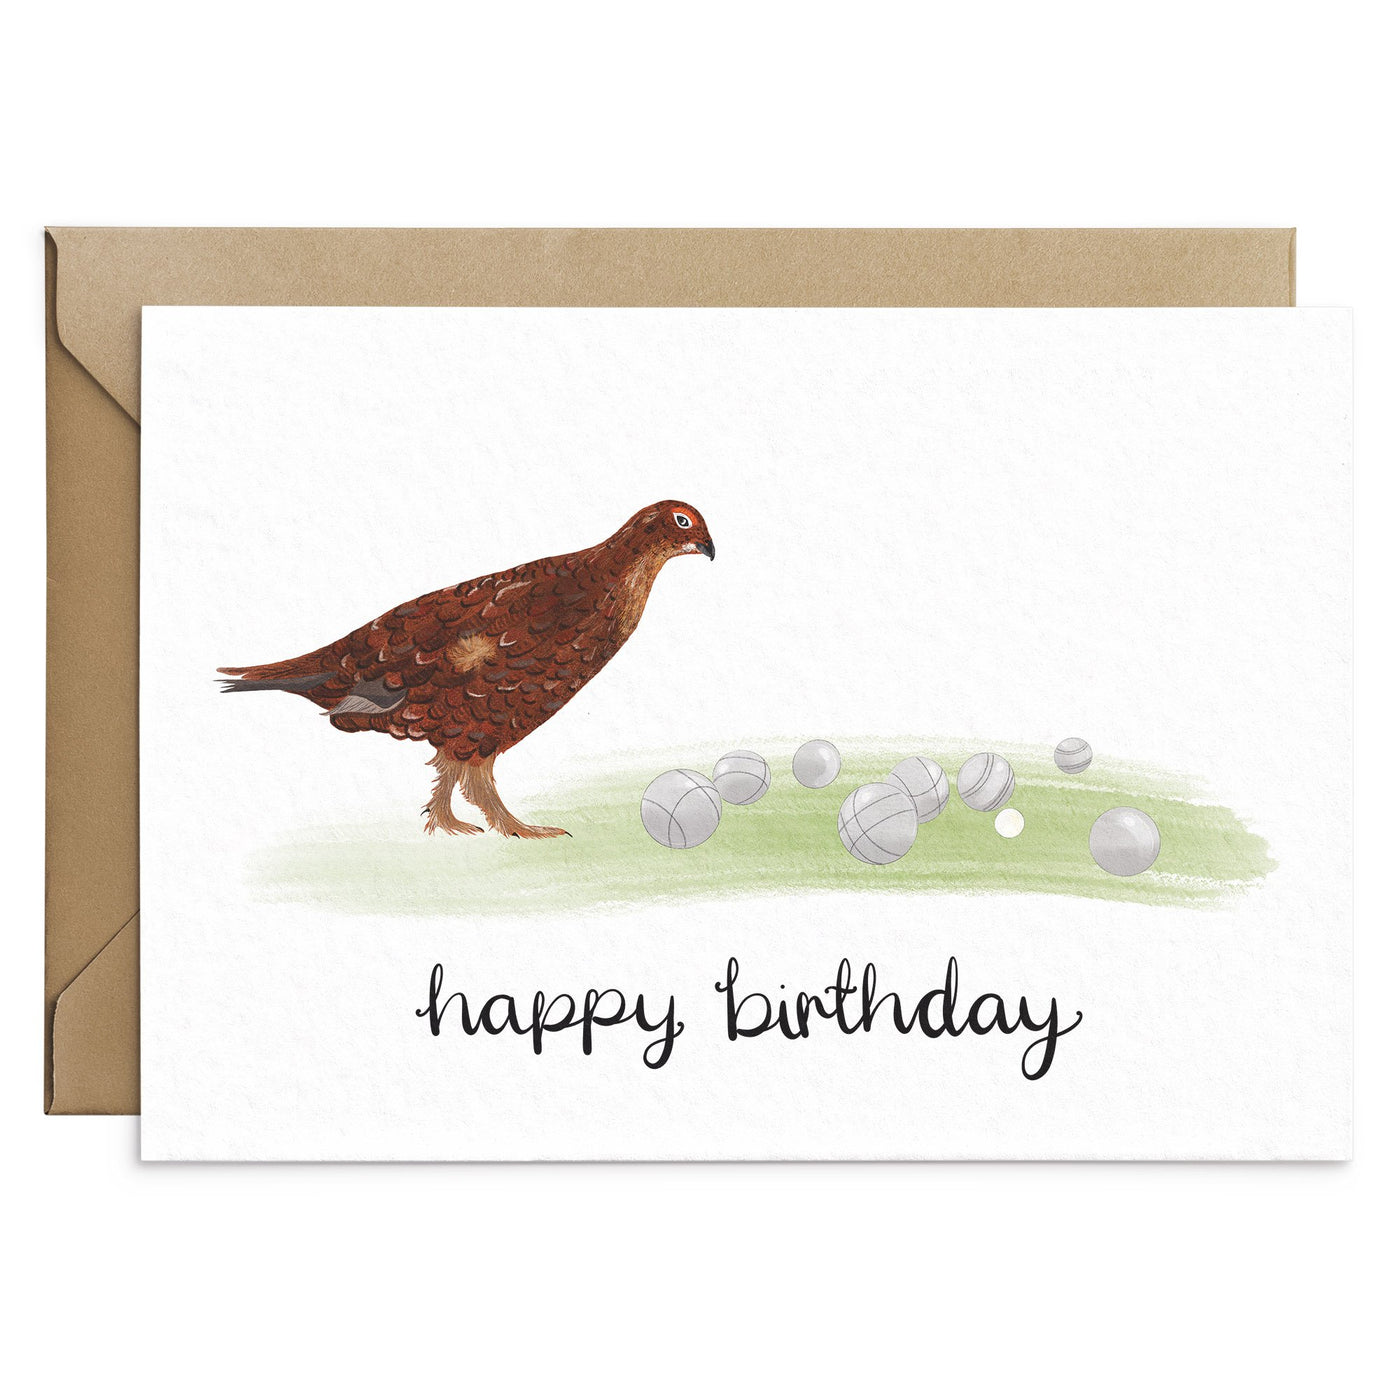 Grouse Birthday Card - Poppins & Co.